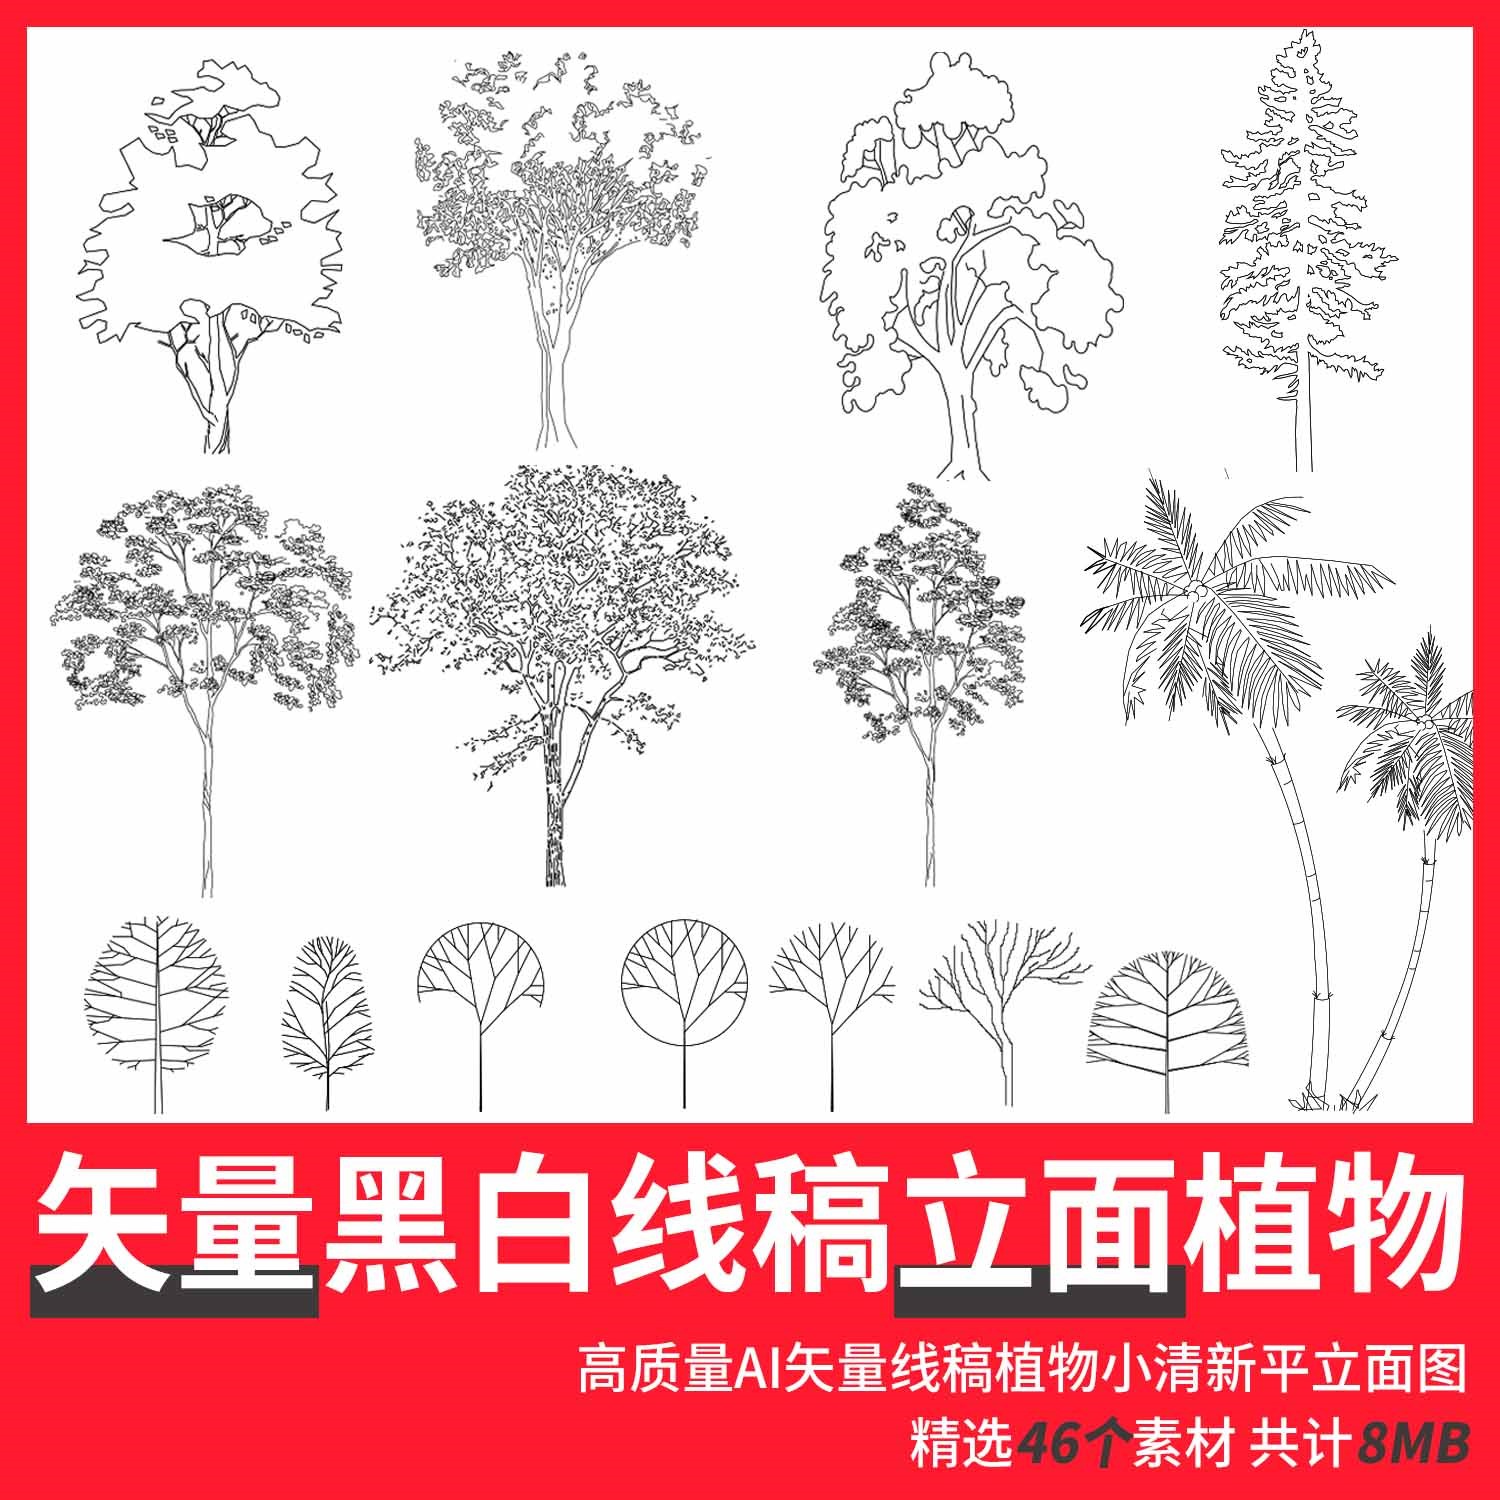 矢量cad ai 黑白手绘线稿植物树立面配景树 建筑景观设计素材